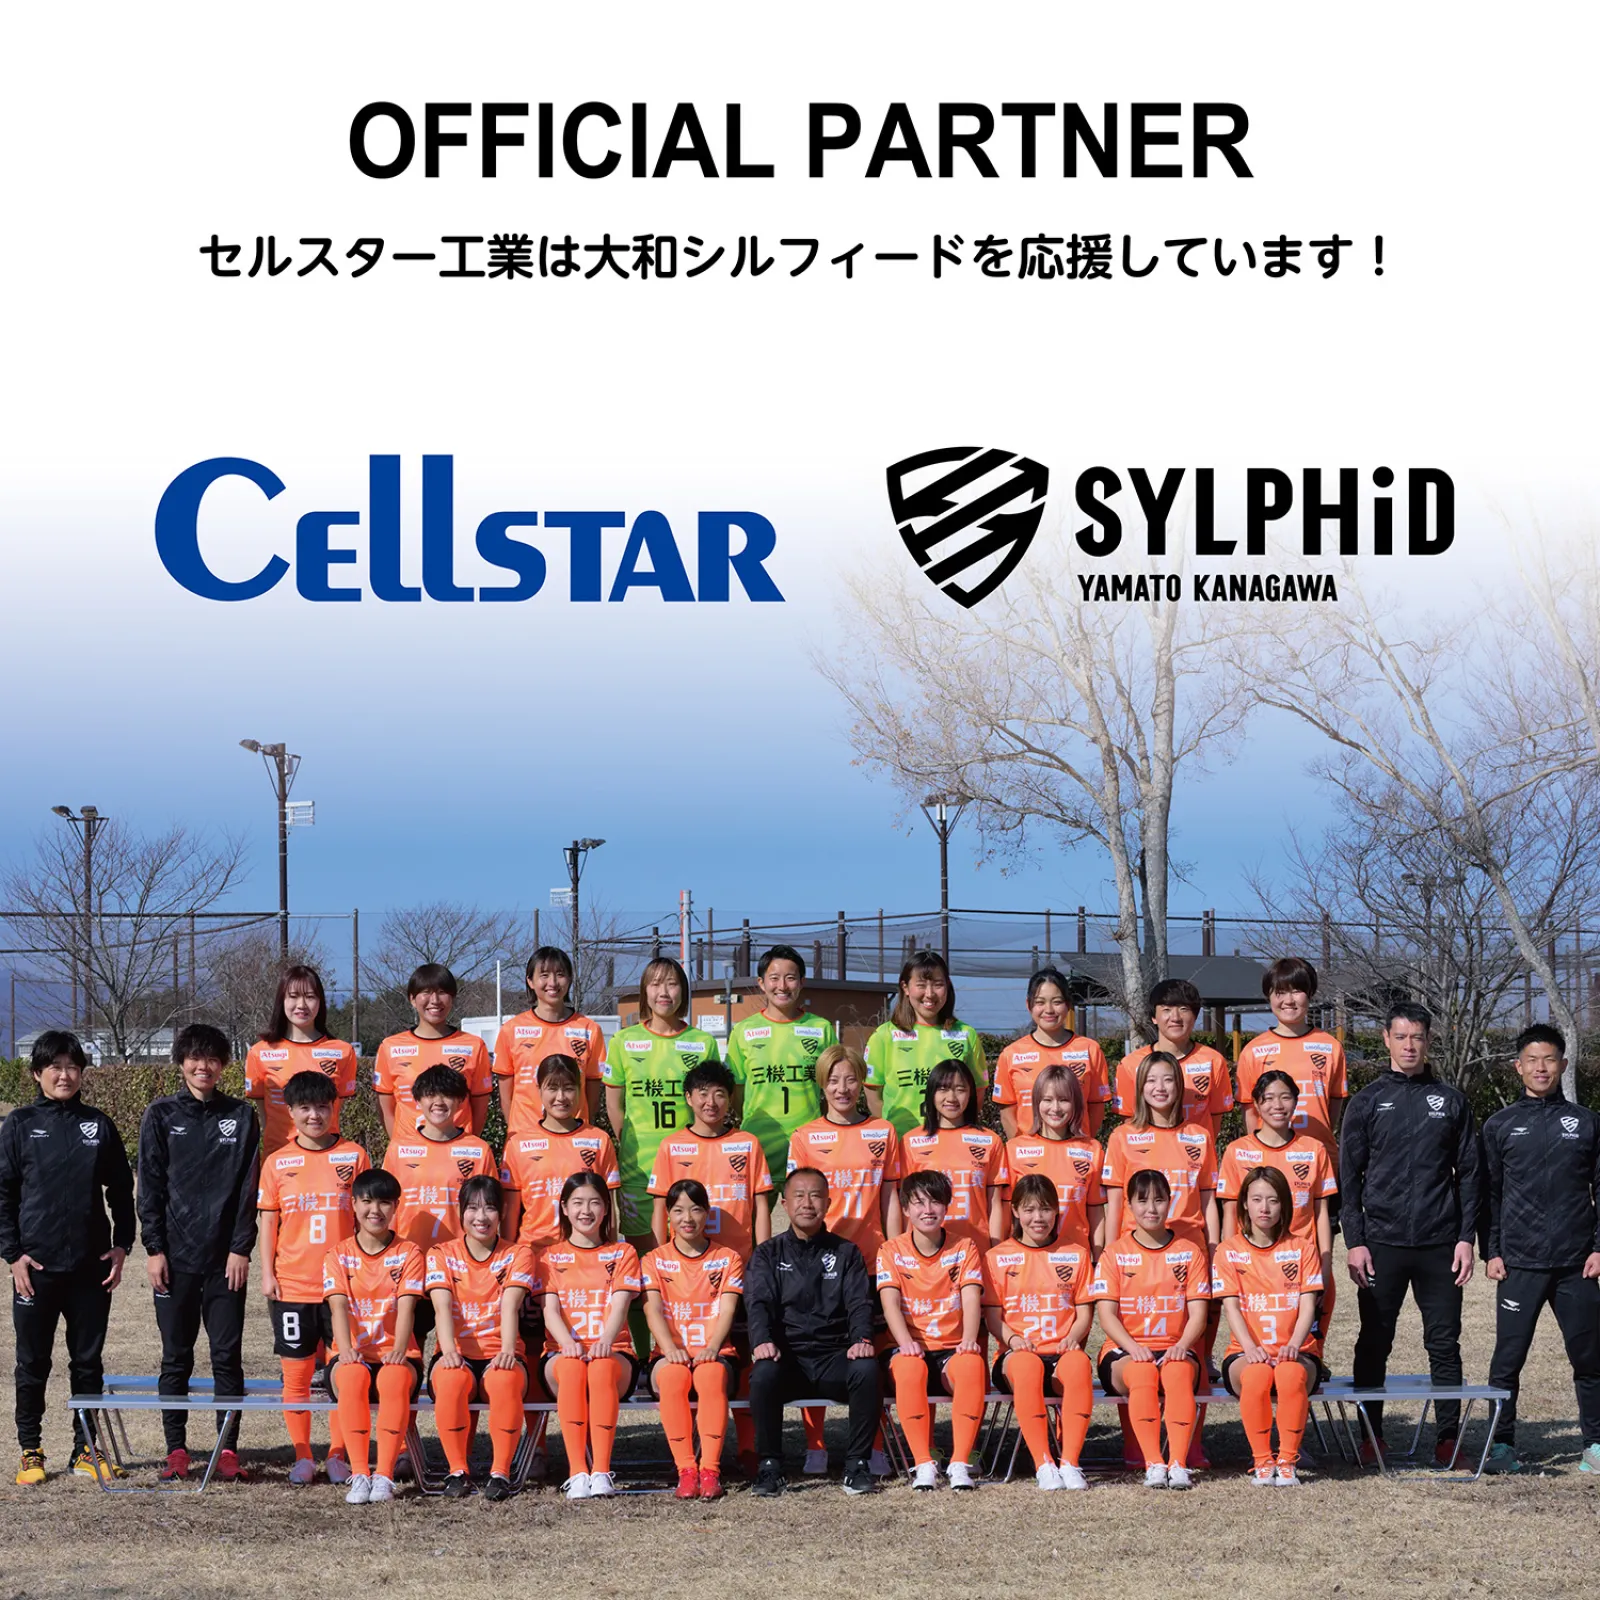 セルスター工業は本社が神奈川県大和市にあります。
同じ大和市を盛り上げるべく女子サッカーのなでしこリーグに参加の
「大和シルフィード」を今シーズンも応援します！
https://www.yamato-sylphid.com